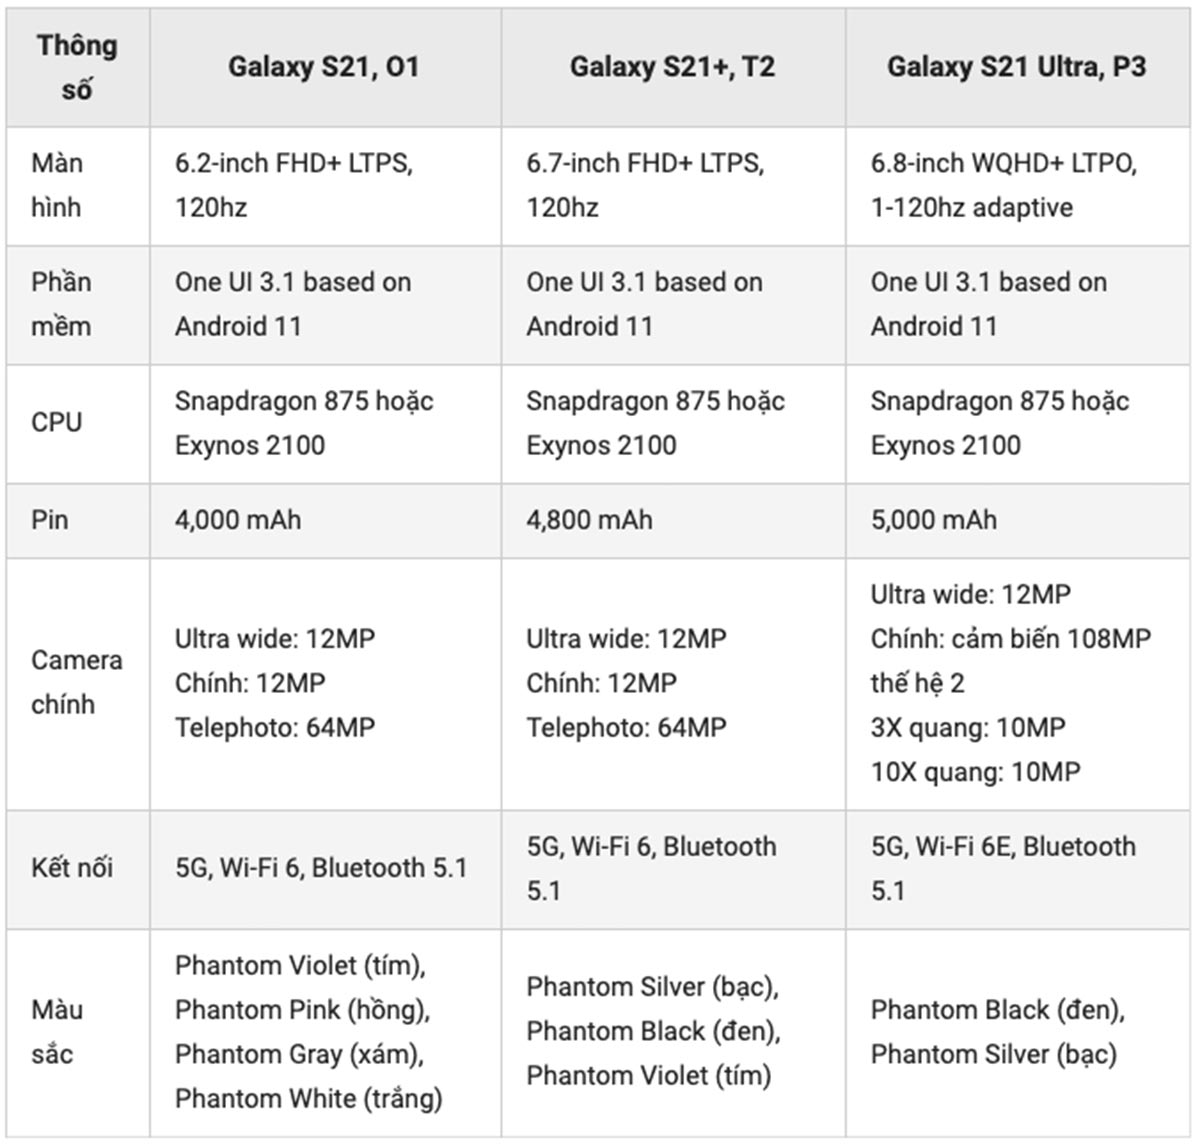 Galaxy S21 lộ thông
số cấu hình với Snapdragon 875 và Exynos 2100, hỗ trợ S-Pen,
có phiên bản vỏ nhựa